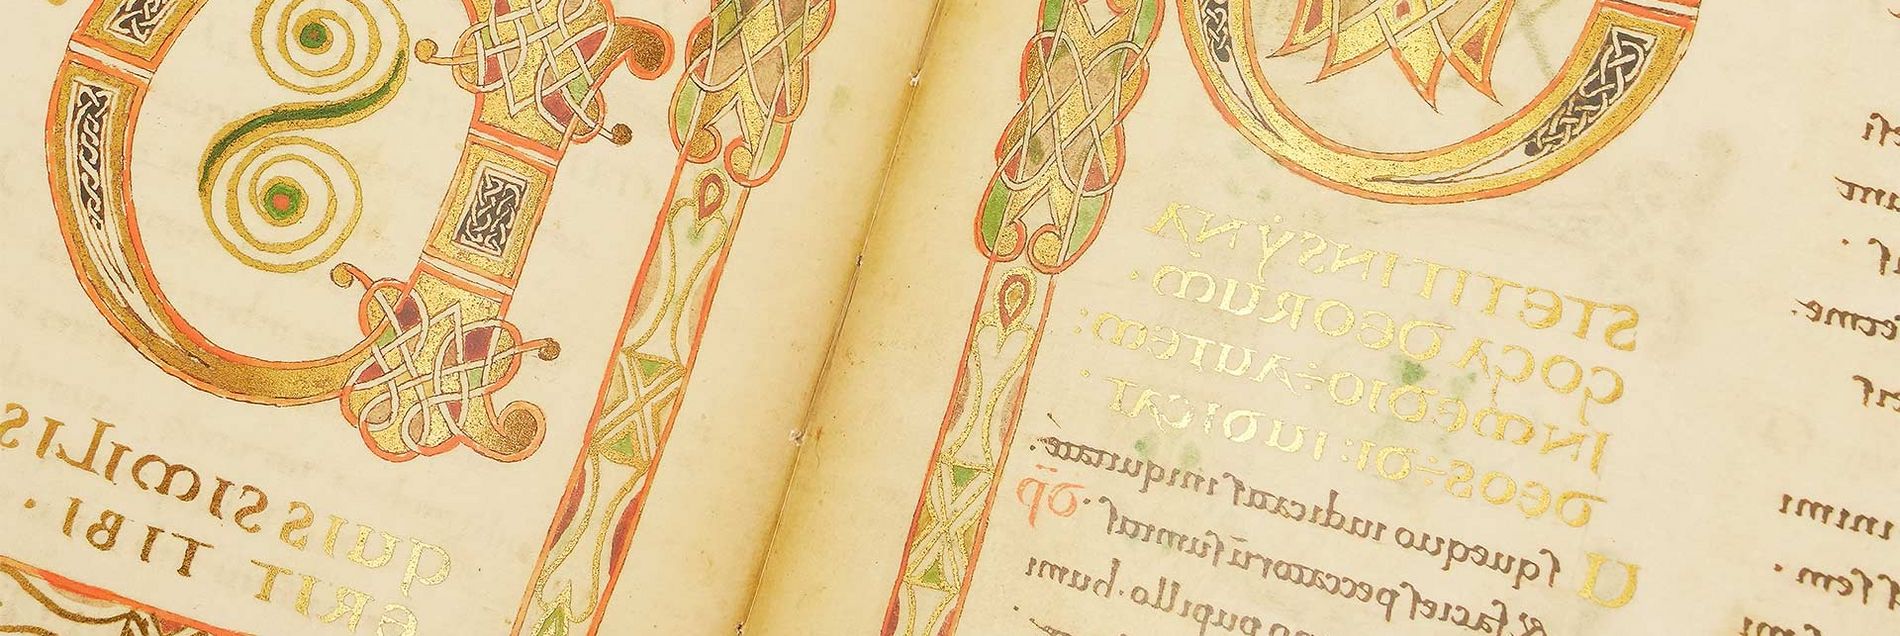 <i>“A rare example of Franco-Saxon book illumination”</i>